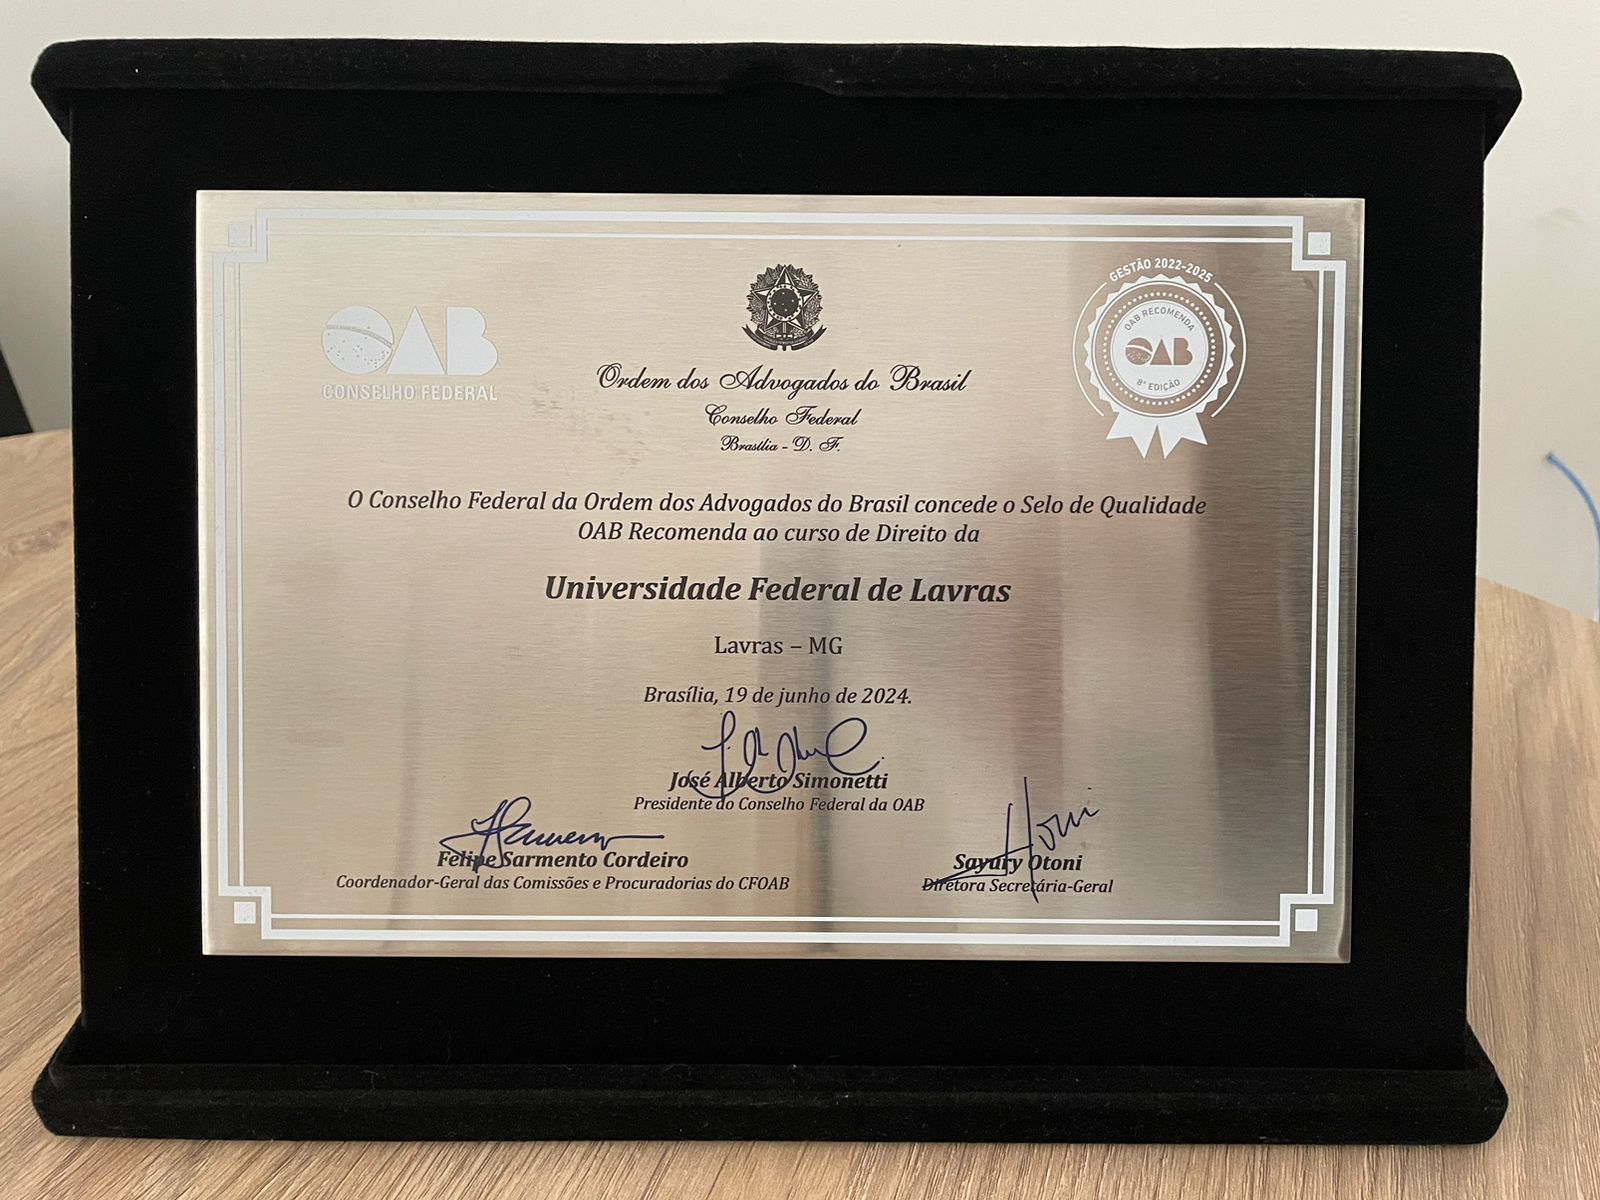  Pela terceira vez consecutiva, curso de Direito da UFLA recebe Selo OAB Recomenda